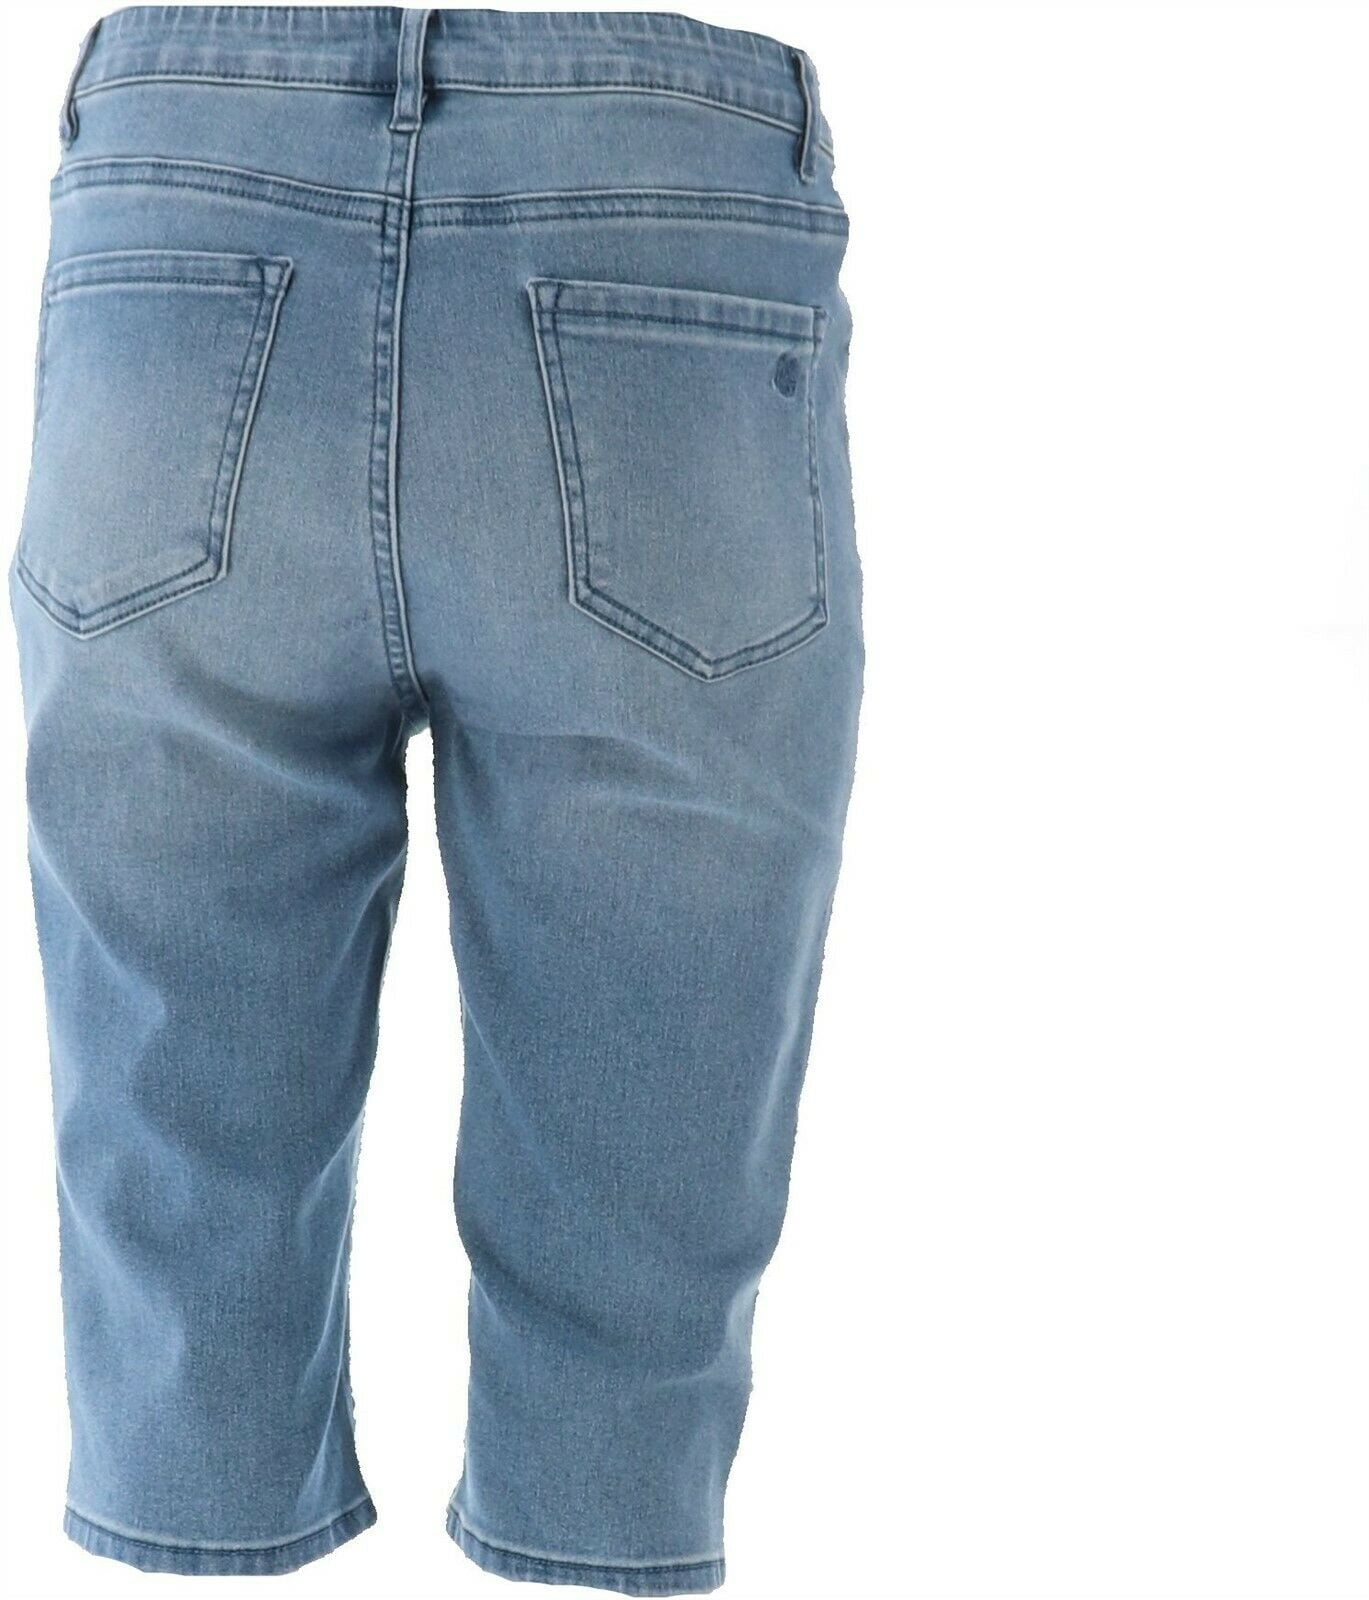 diane gilman virtual stretch jeans